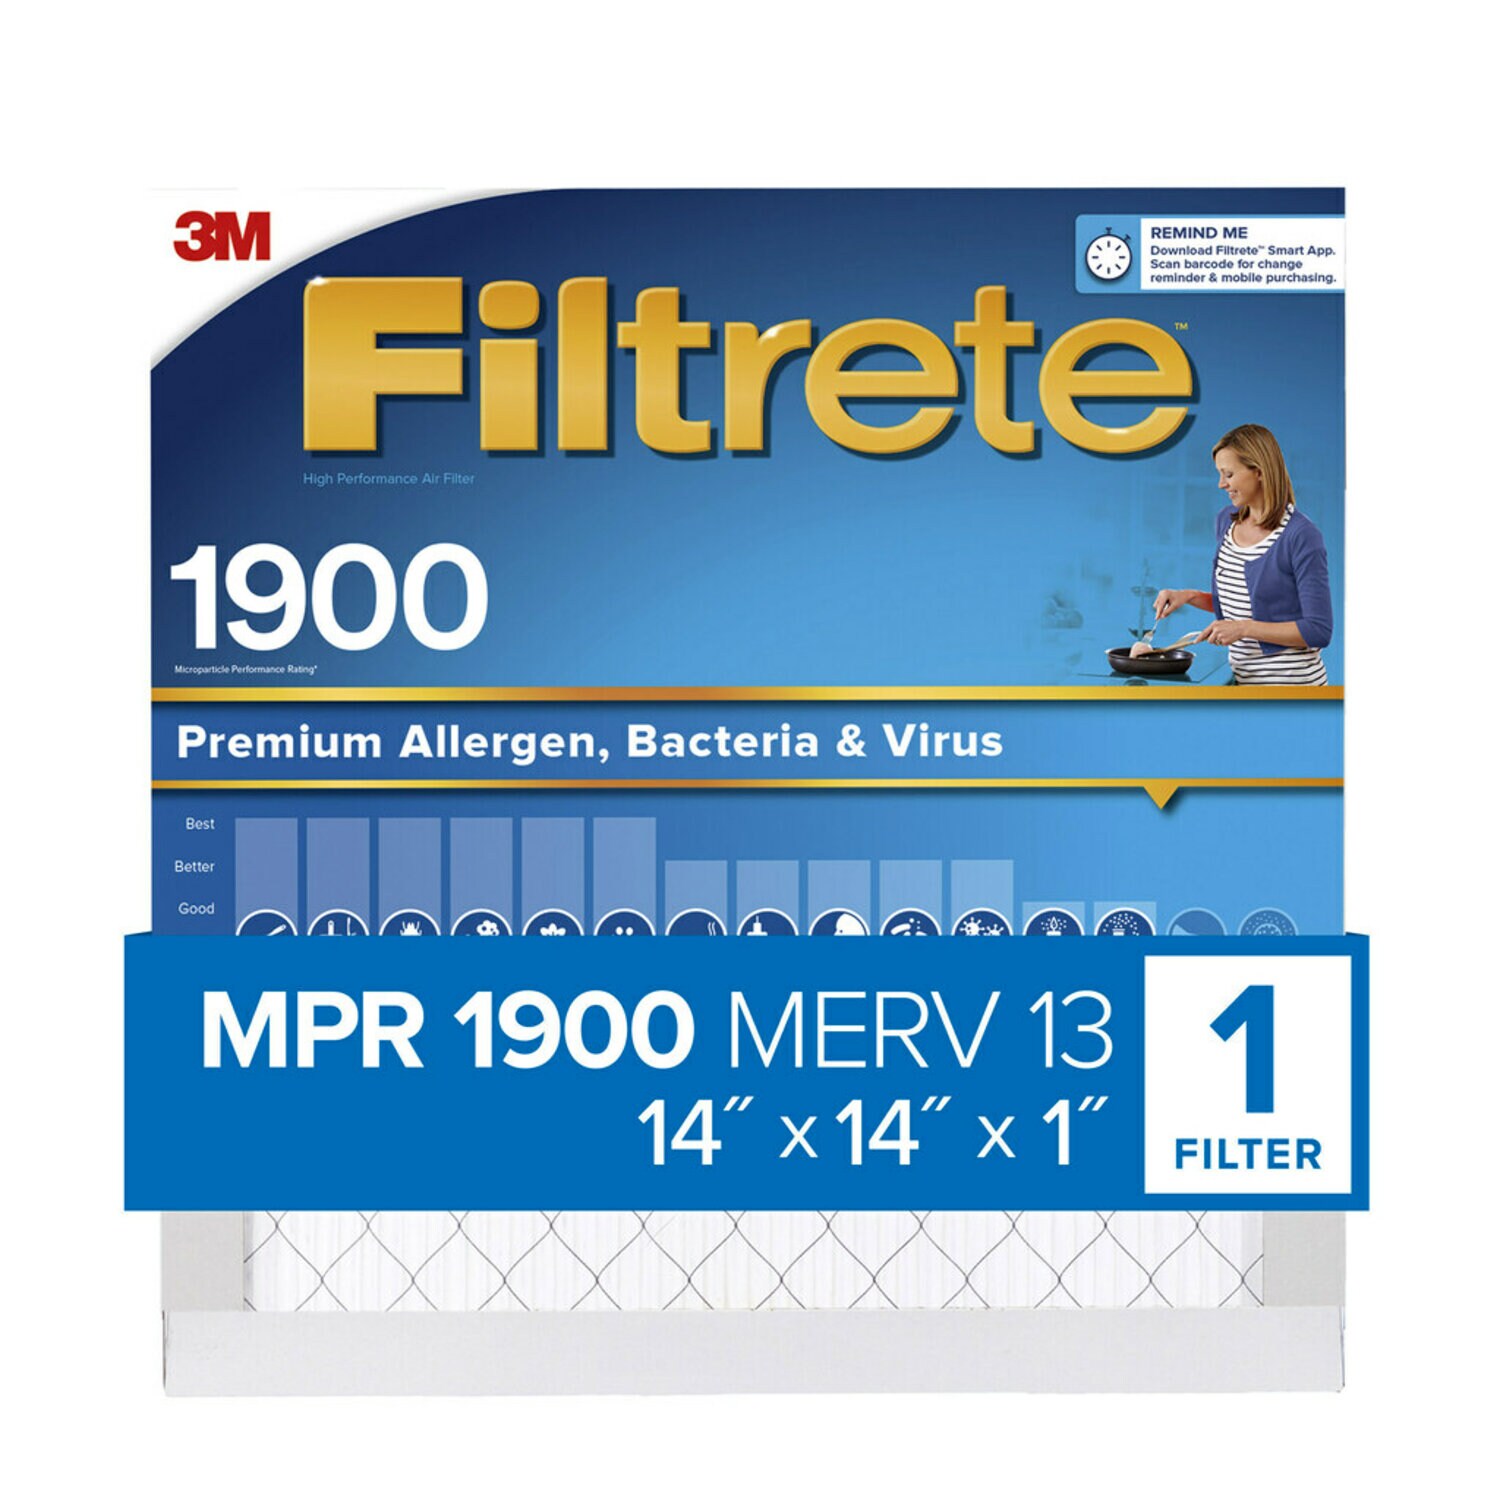 7100266208 - Filtrete High Performance Air Filter 1900 MPR UA11DC-4, 14 in x 14 in x 1 in (35.5 cm x 35.5 cm x 2.5 cm)